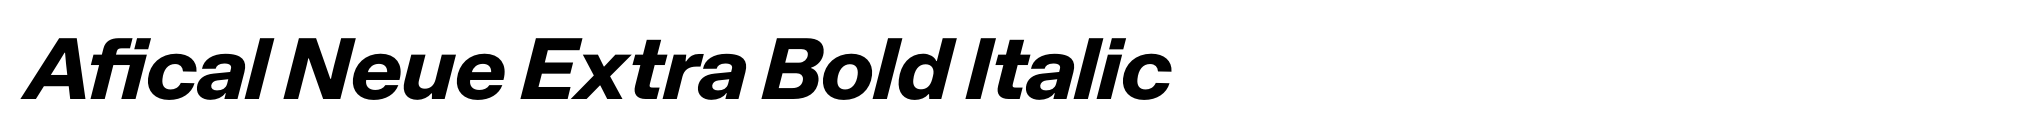 Afical Neue Extra Bold Italic image